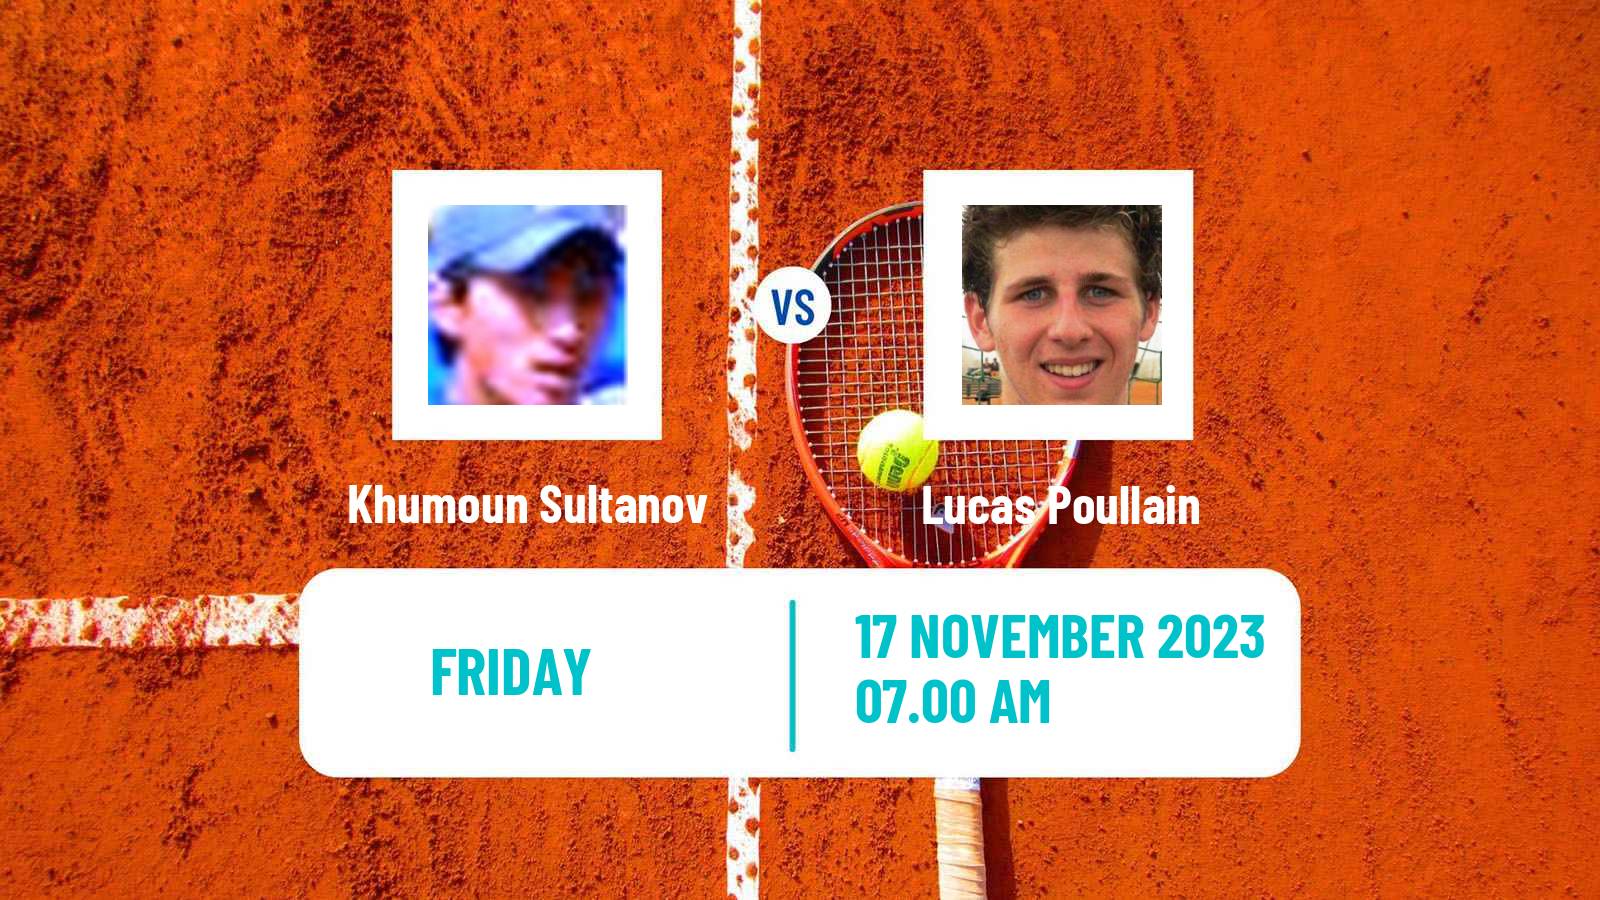 Tennis ITF M25 Vale Do Lobo Men Khumoun Sultanov - Lucas Poullain